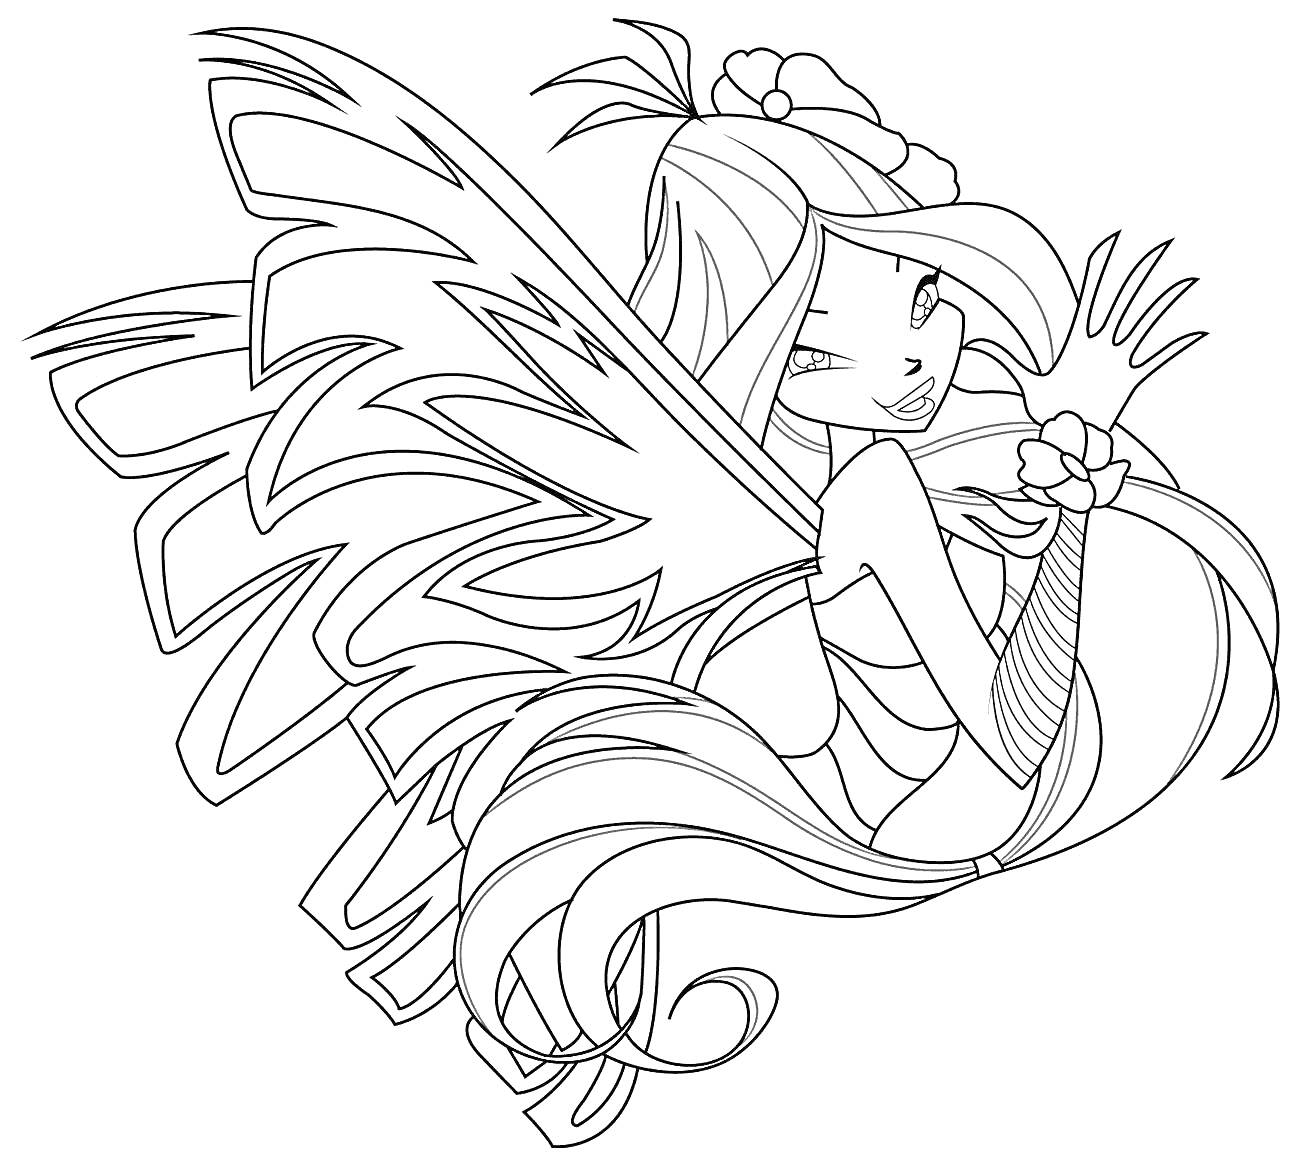 Раскраска Фея Винкс в сиреникс форме с длинными волосами, большими крыльями, цветком в волосах и нарукавником с цветочным узором.